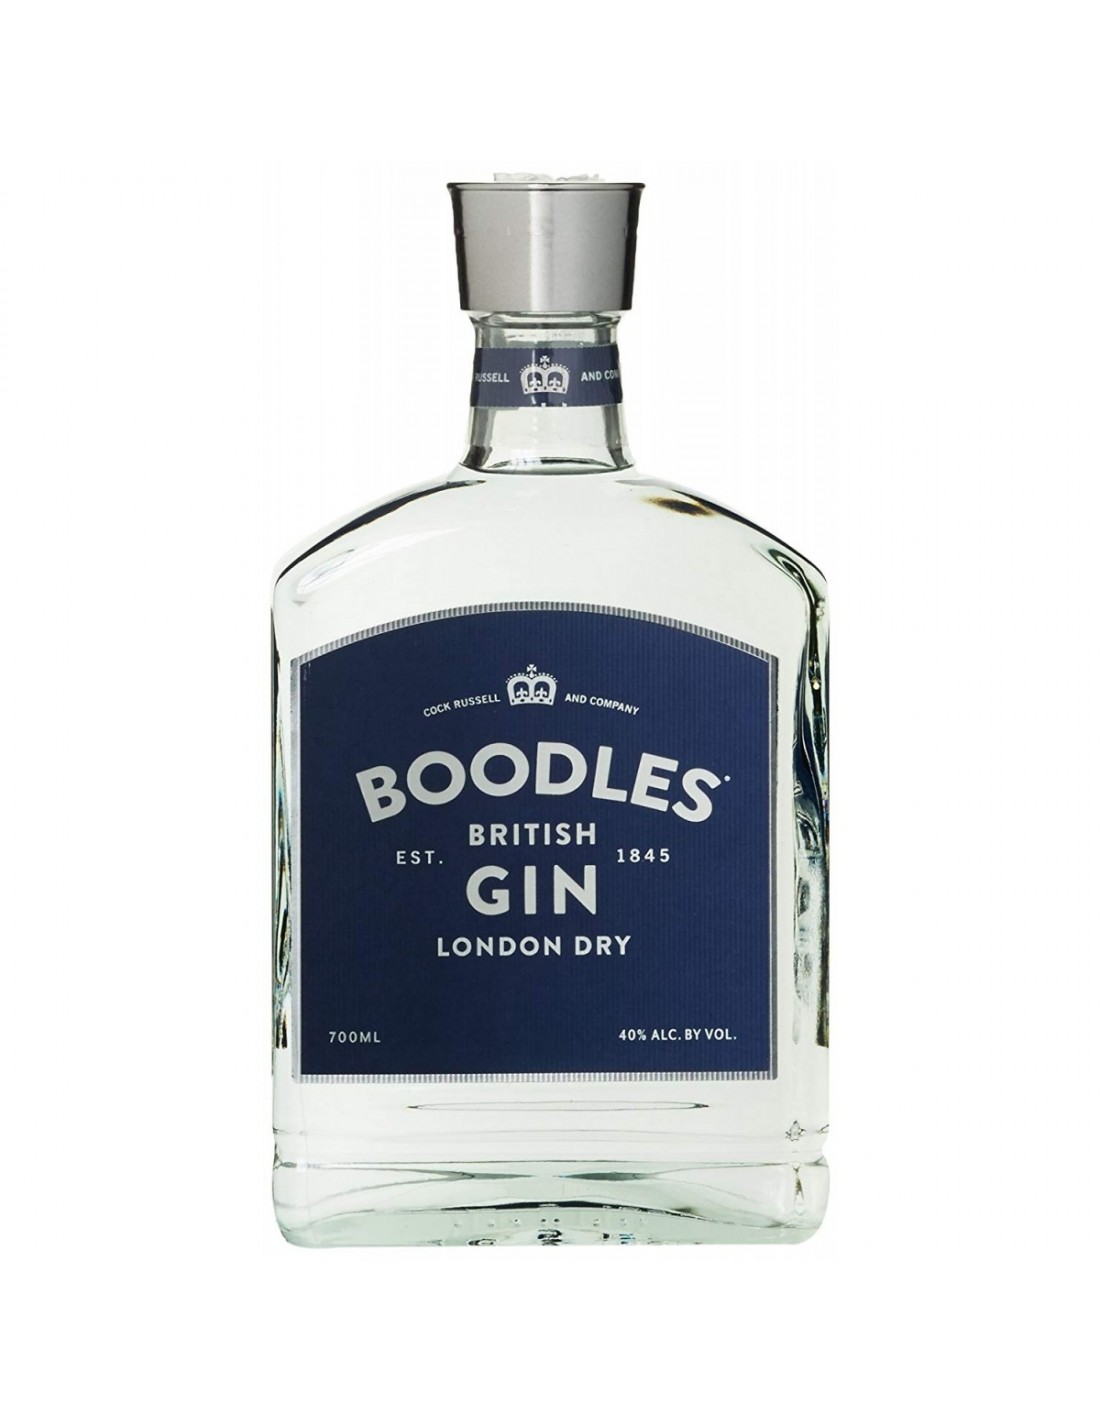 Gin Boodles 40% alc., 0.7L, Anglia alcooldiscount.ro